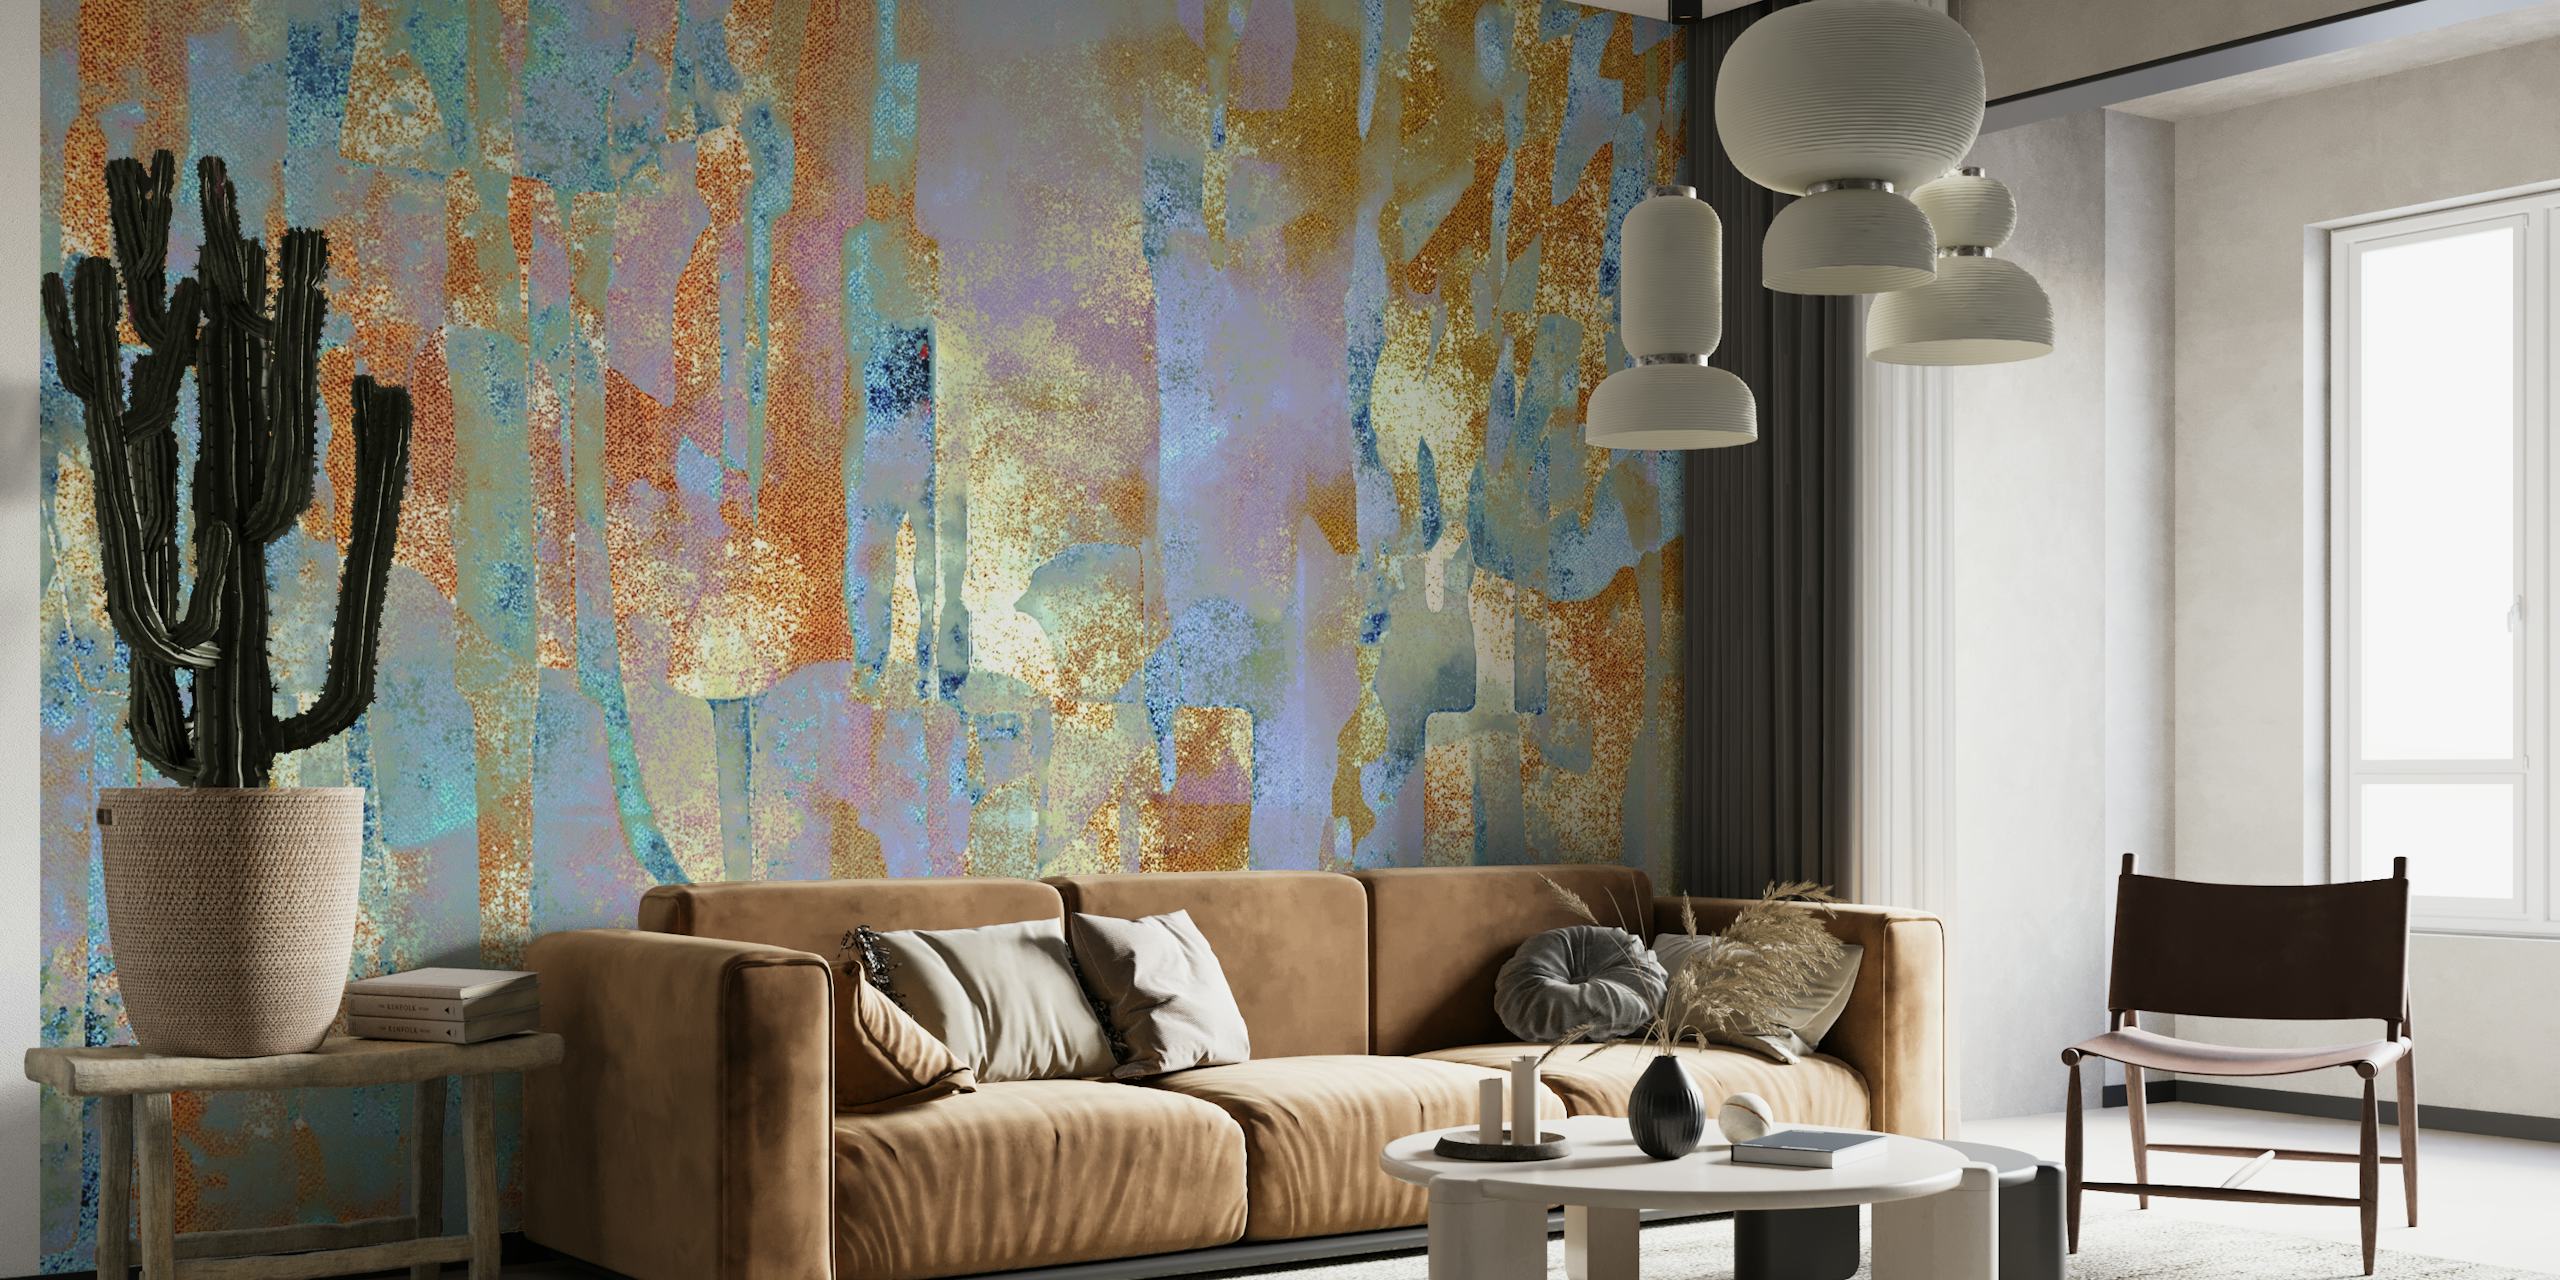 African Dye on Mud Cloth inspiroima seinämaalaus rikkailla tekstuureilla ja maanläheisillä sävyillä